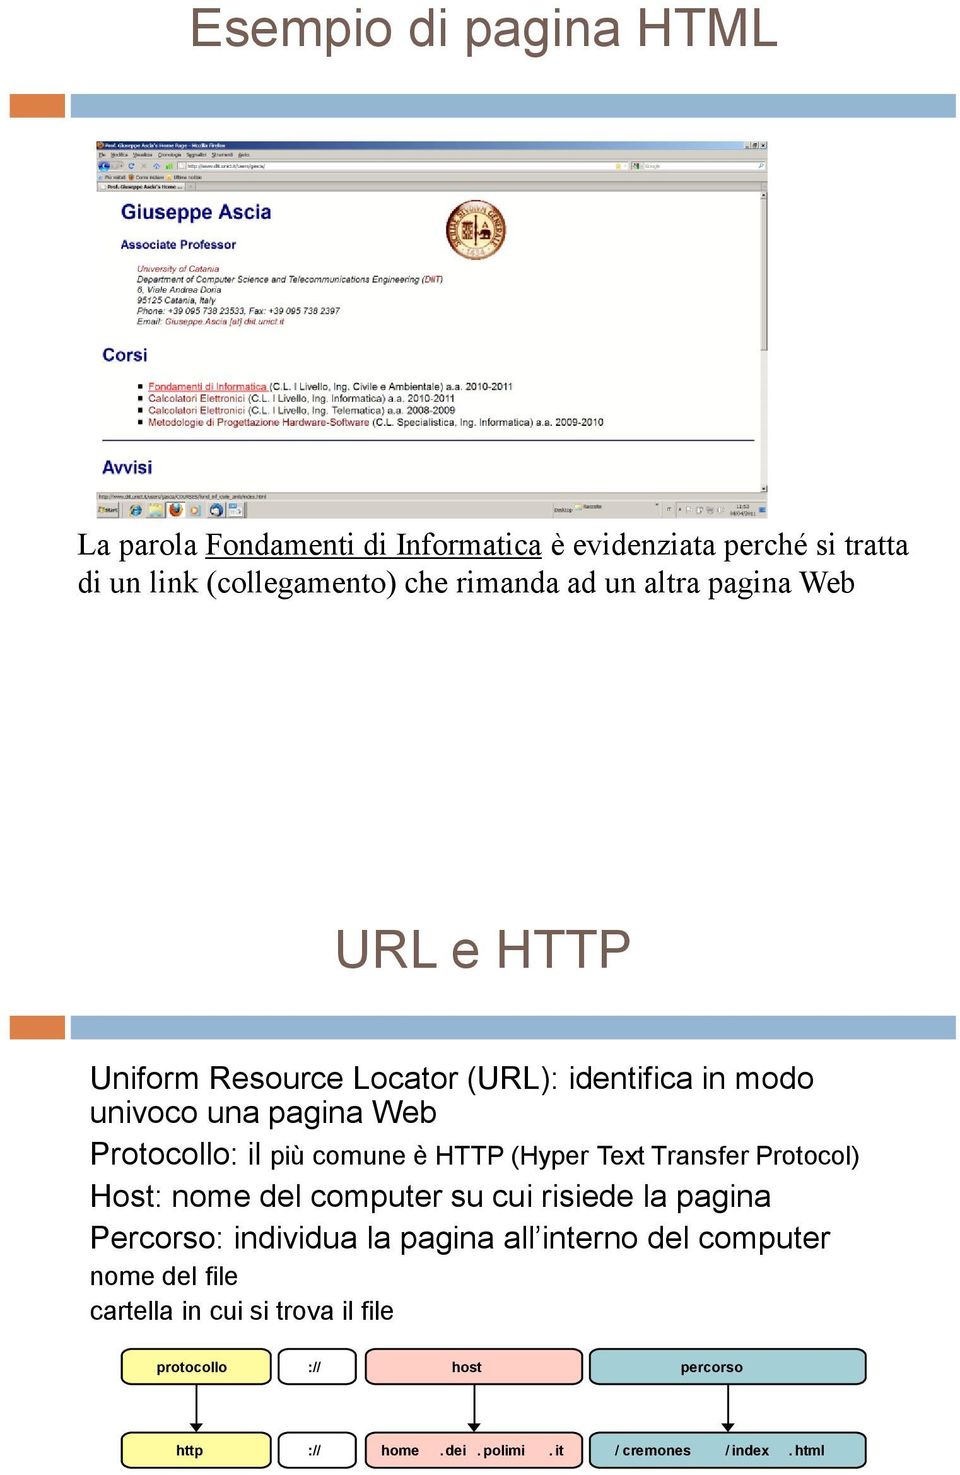 (Hyper Text Transfer Protocol) Host: nome del computer su cui risiede la pagina Percorso: individua la pagina all interno del computer